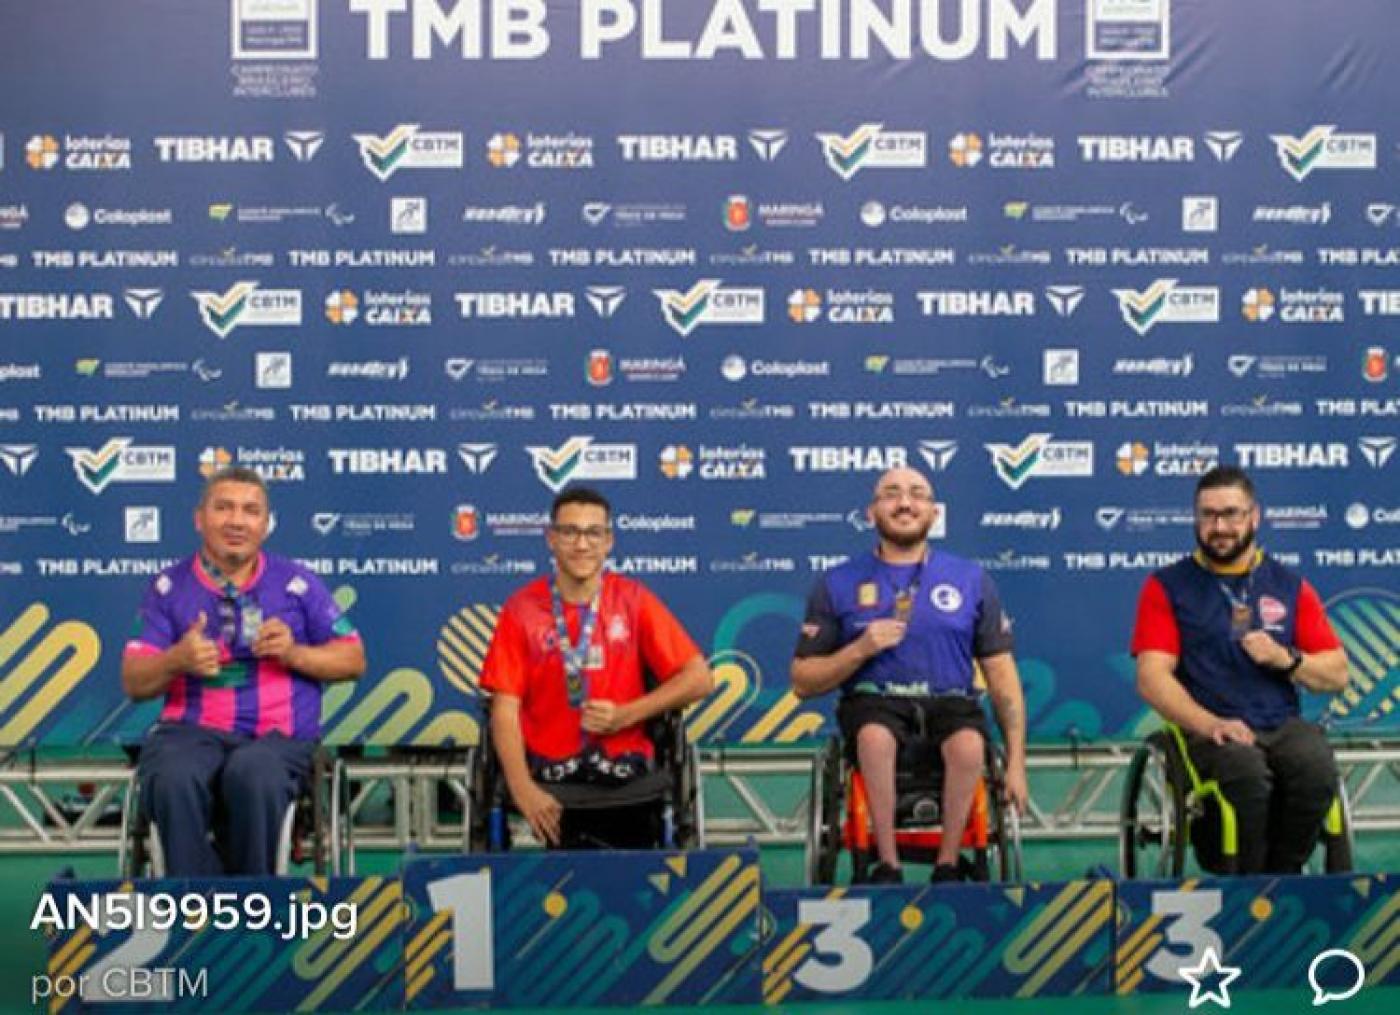 atletas cadeirantes com medalha atrás do pódio #paratodosverem